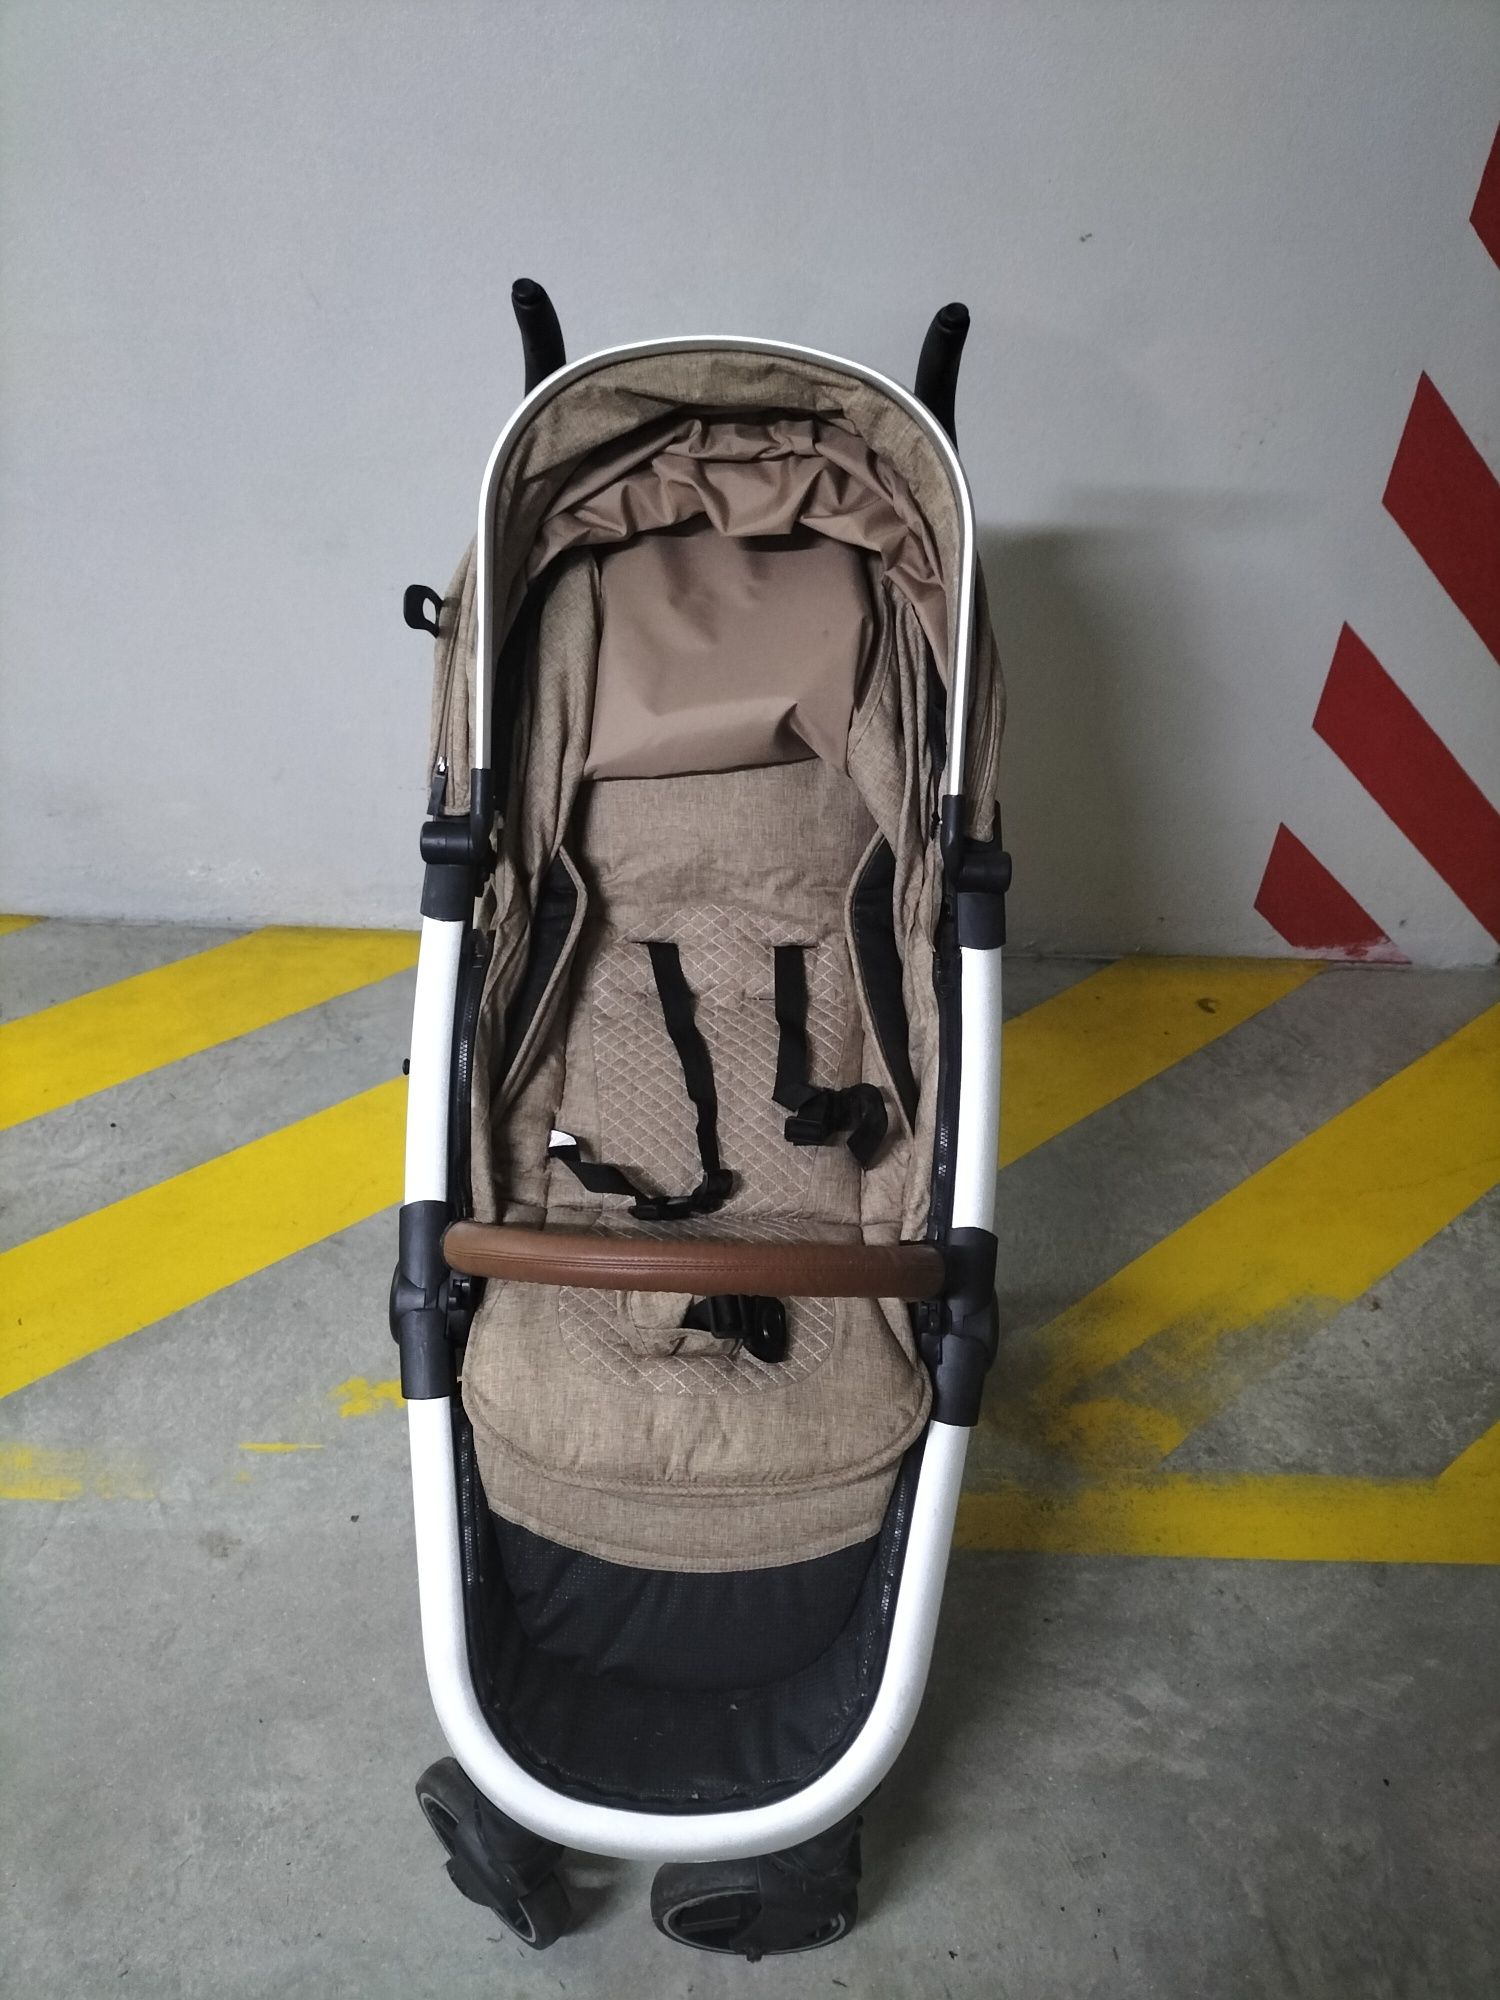 Carrinho de bebé com cadeira (carrinho+automóvel)+ isofix